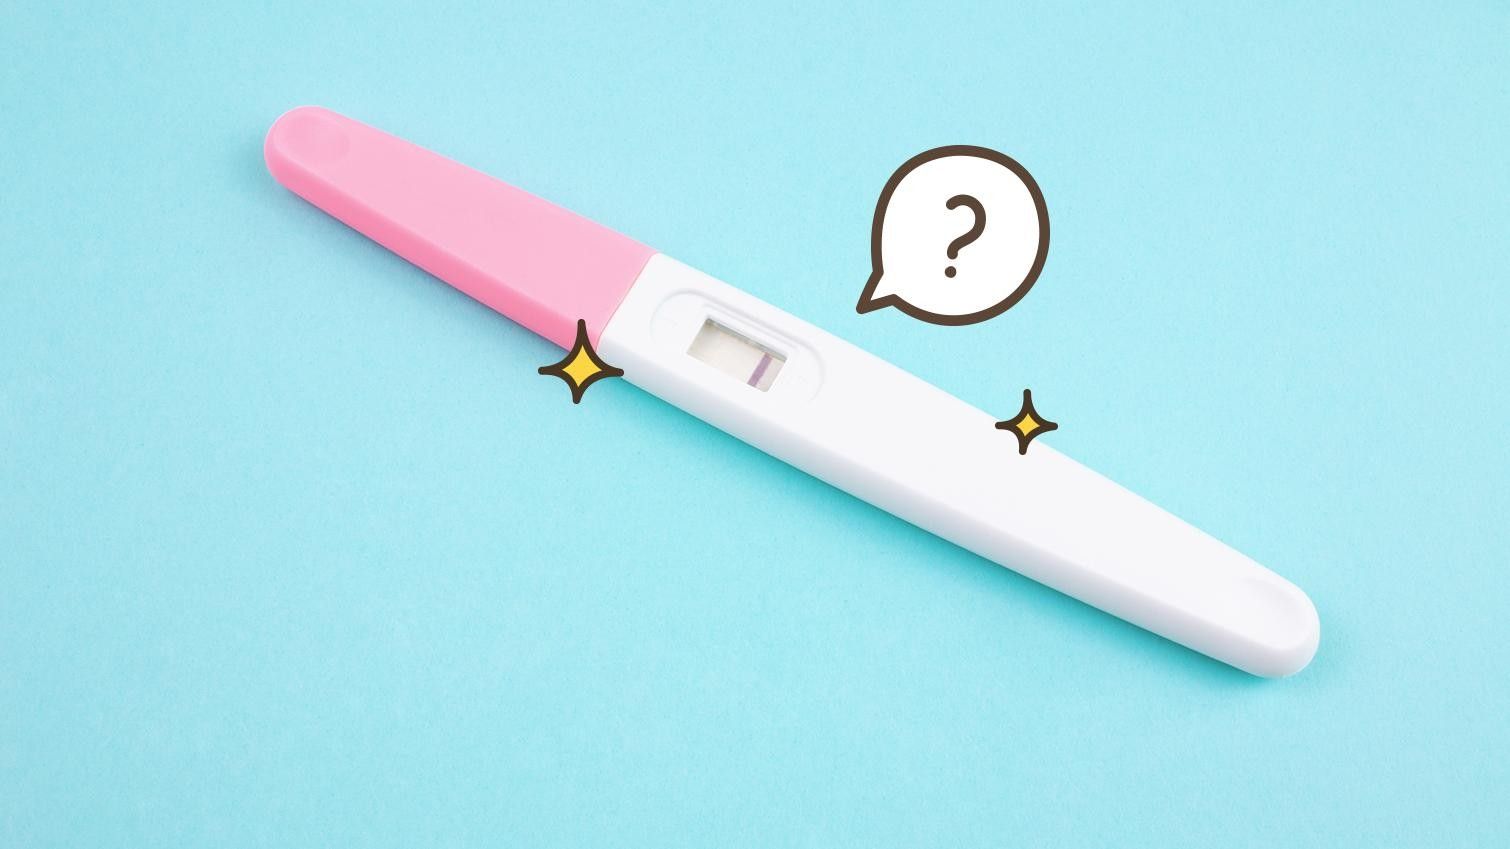 Test Pack Kesuburan dan Test Pack Kehamilan, Apa Bedanya?